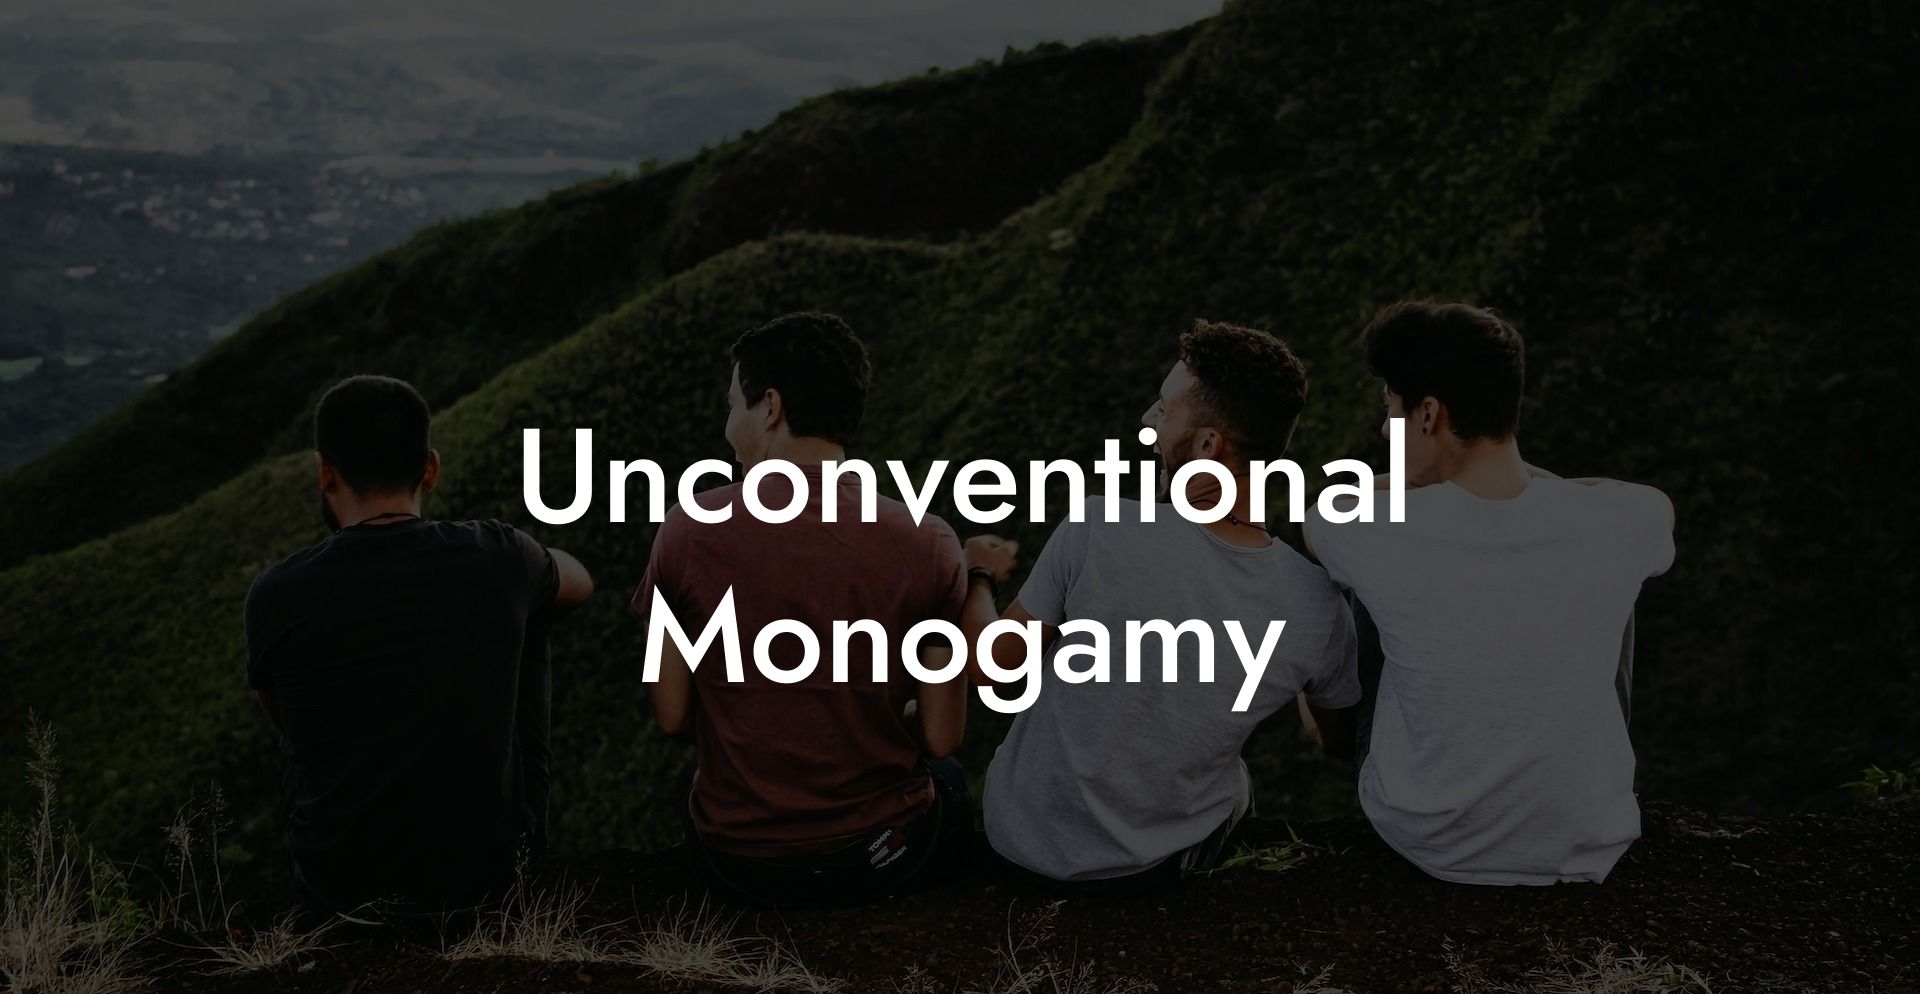 Unconventional Monogamy